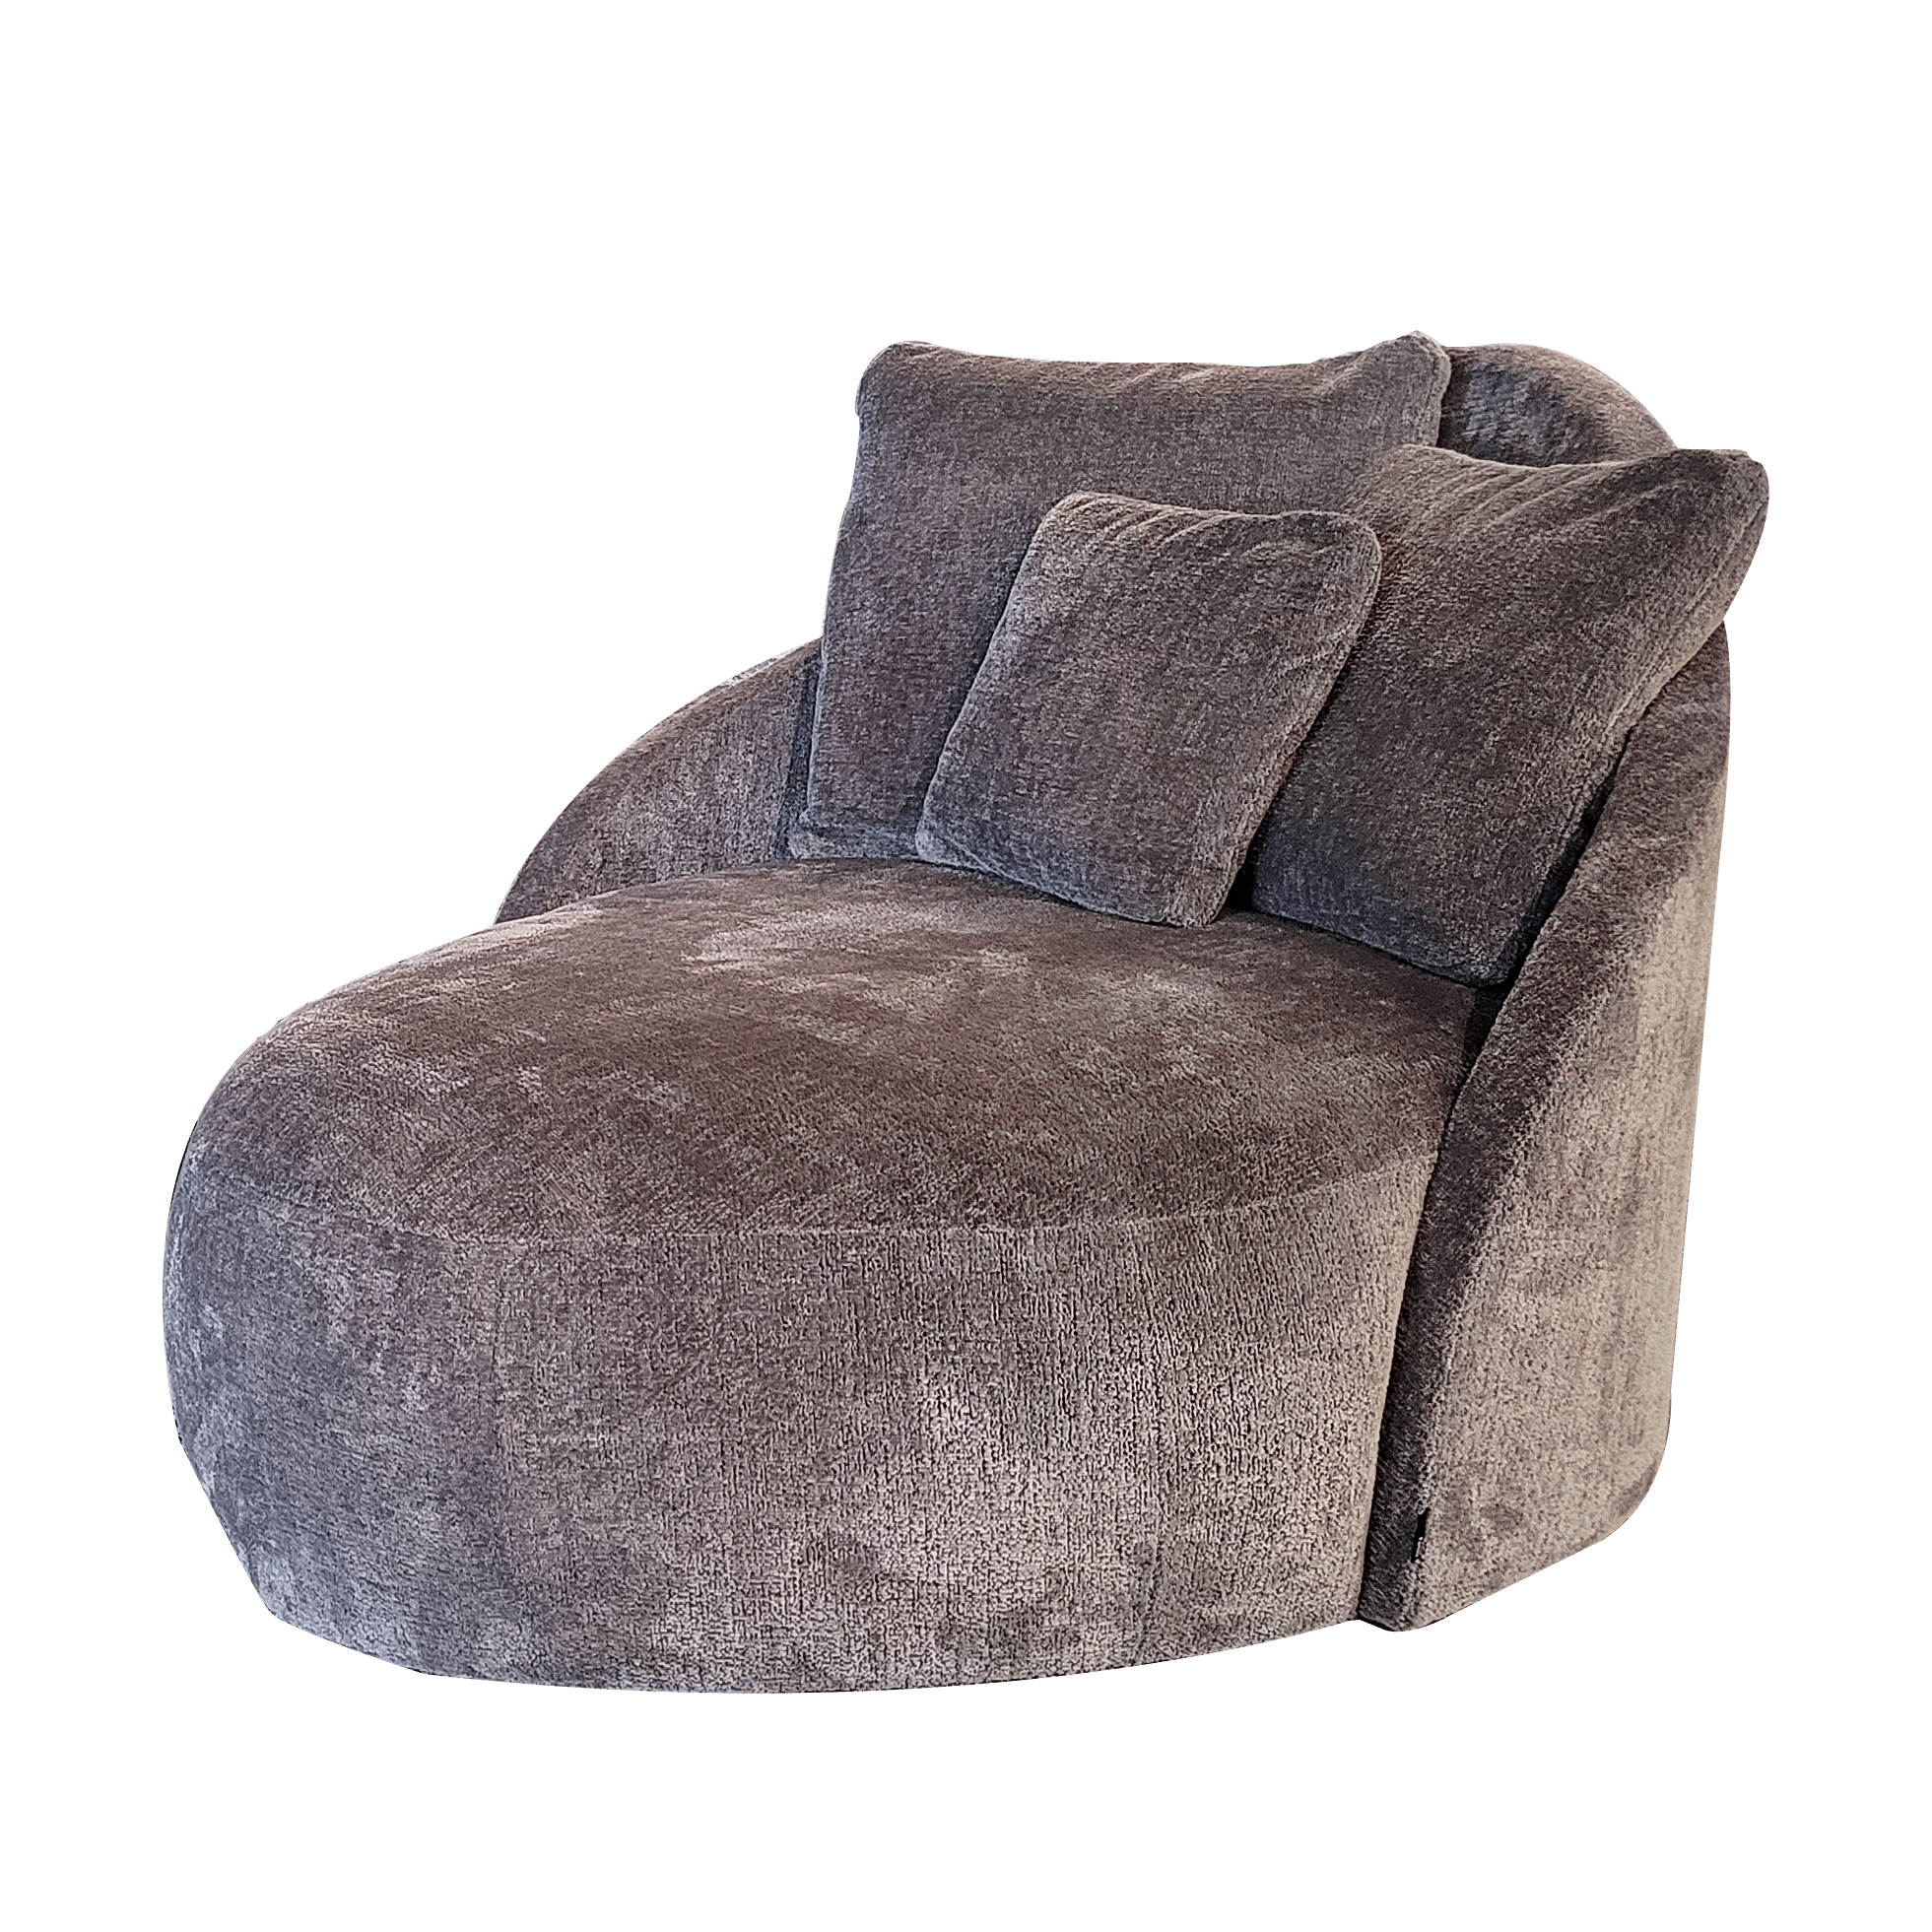 dosis Wapenstilstand Snor Toya Lounge Chair online bestellen bij Potz Wonen